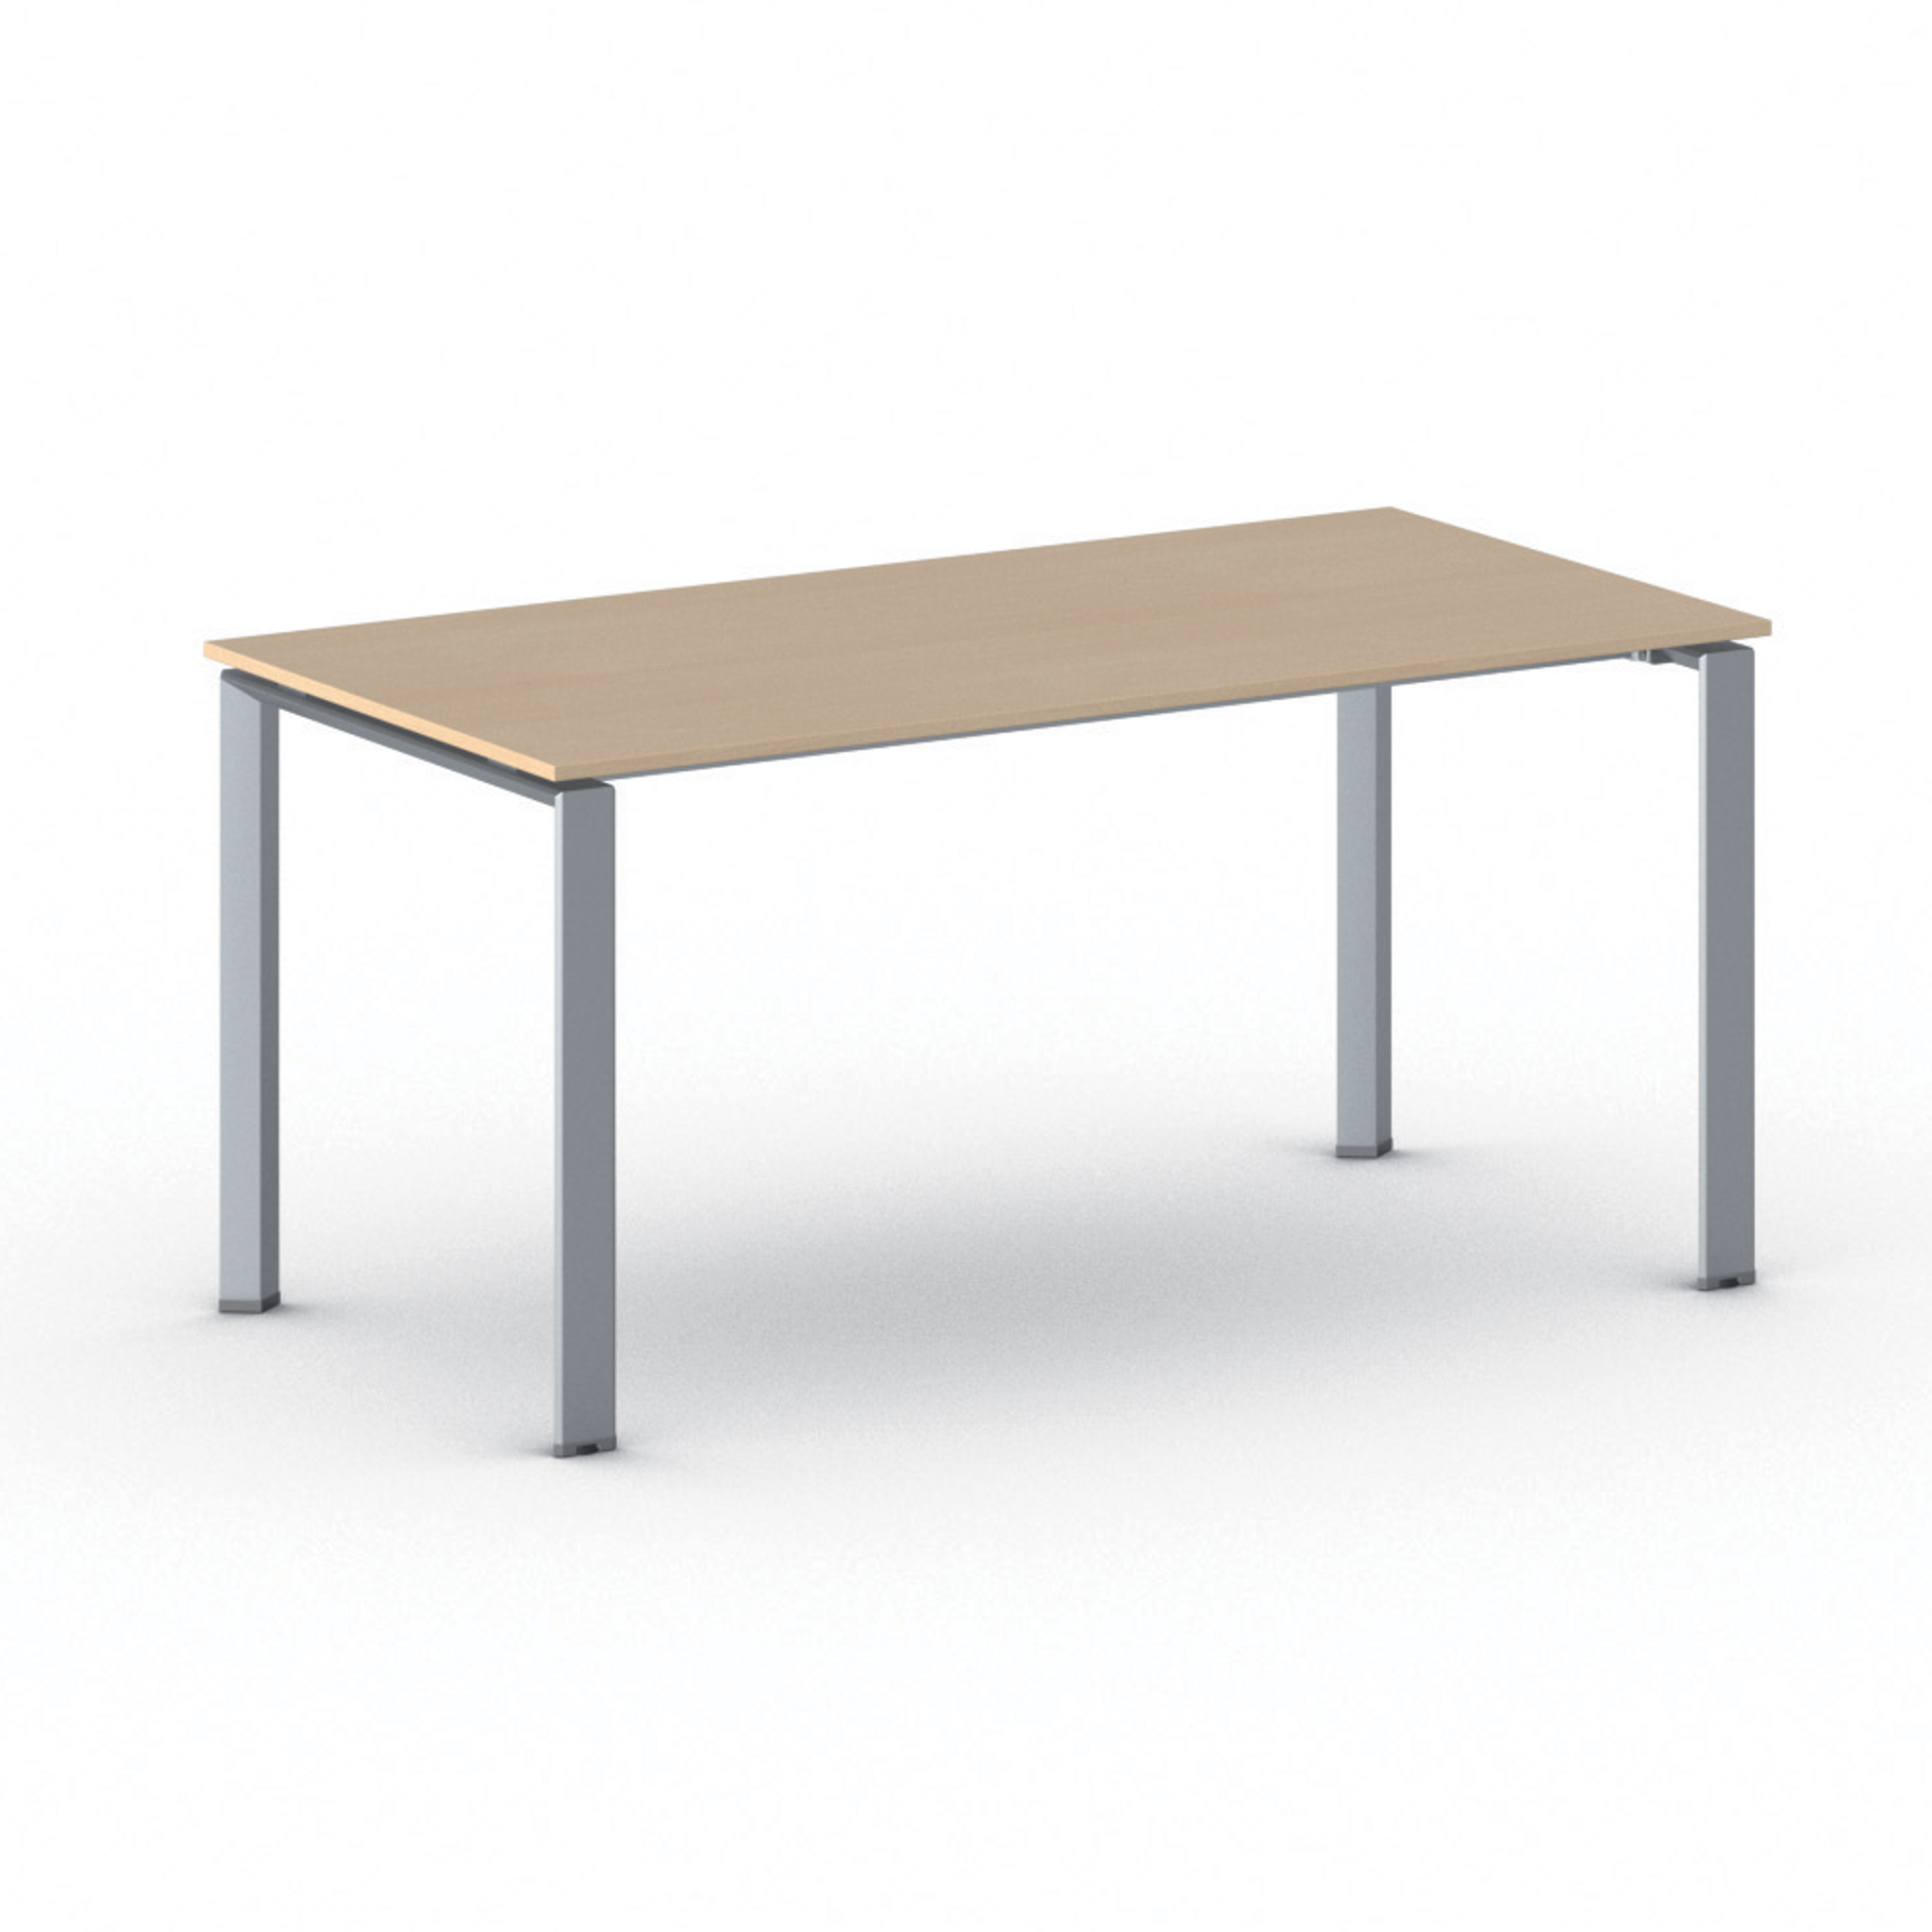 Konferenztisch, Besprechungstisch INFINITY 160x80 cm, graues Fußgestell